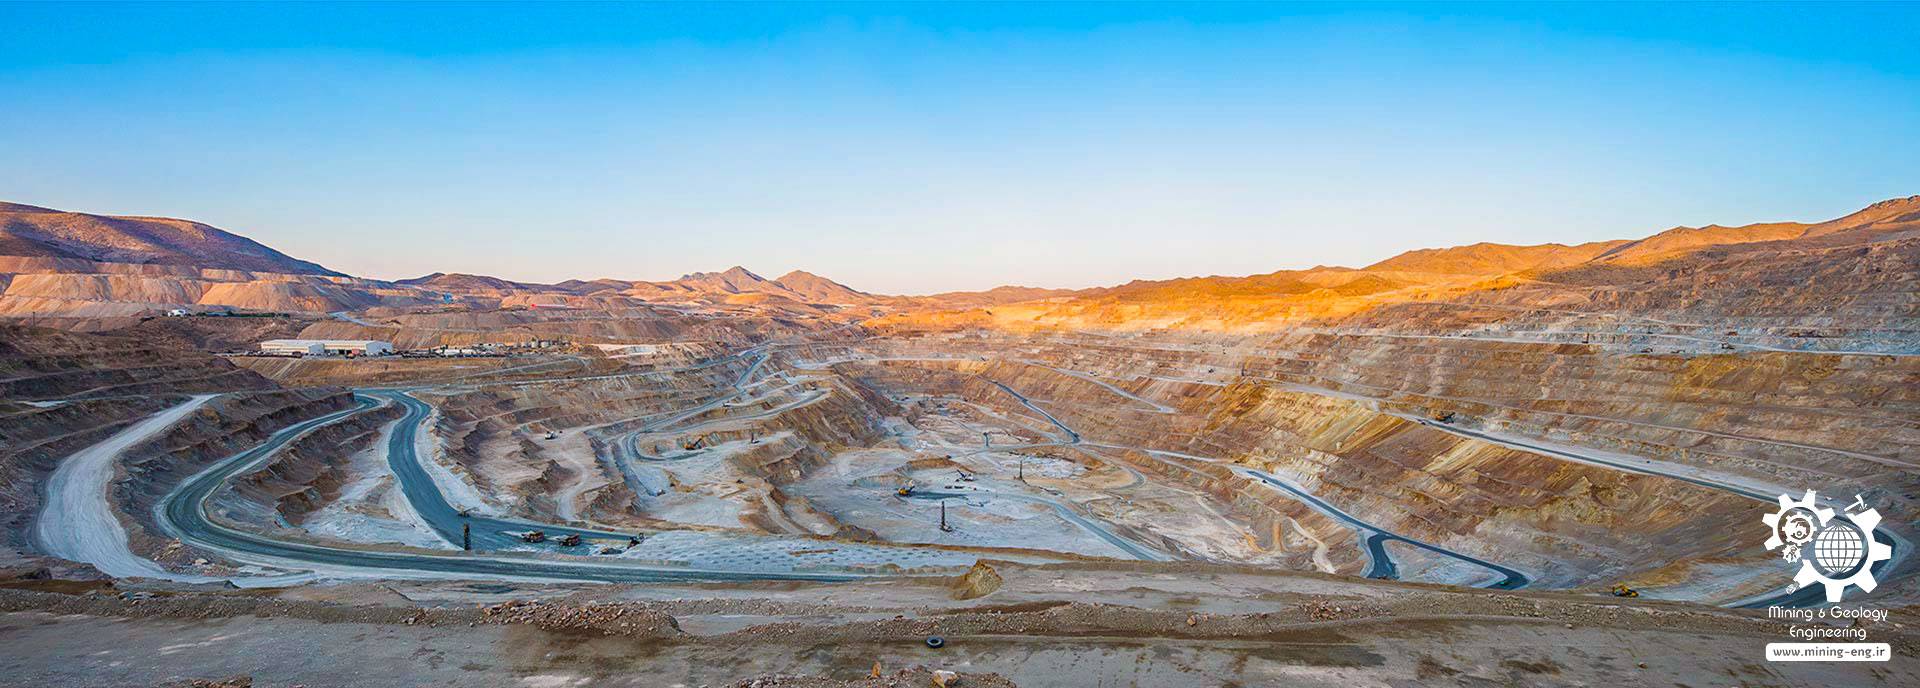 نمایی از معدن سرچشمه در کرمان